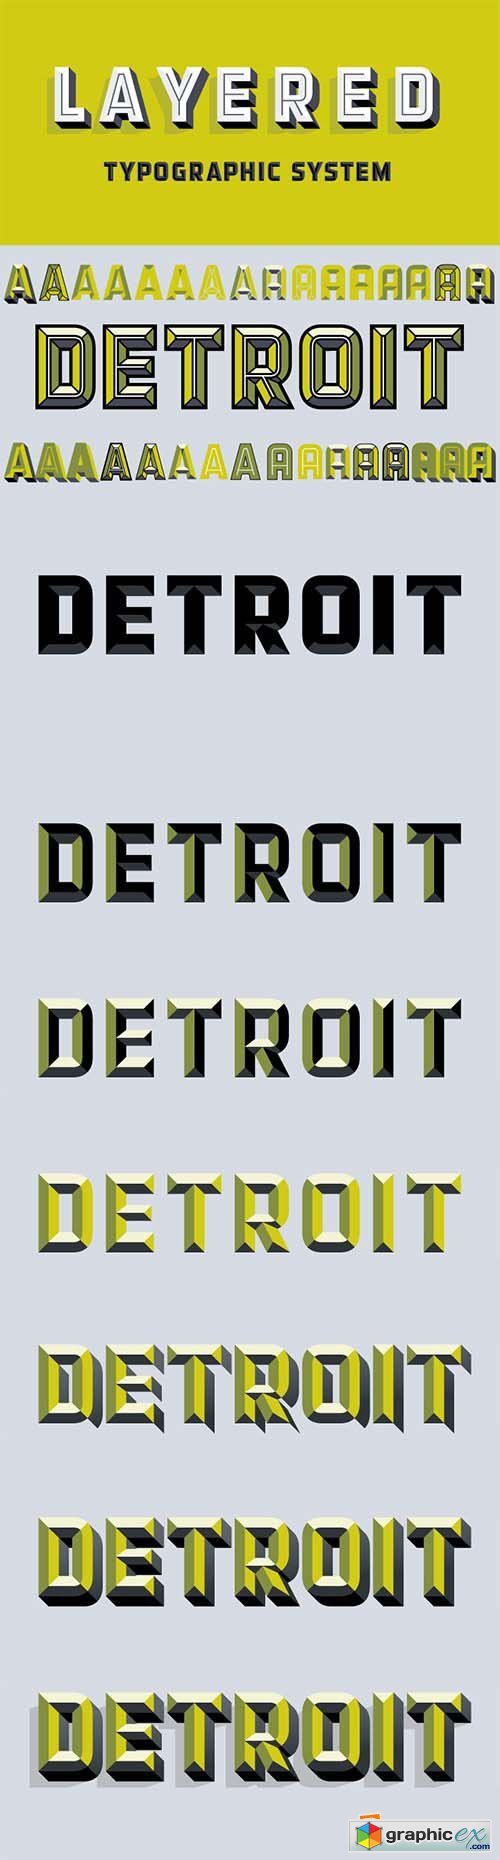 Detroit Font Family - 12 Fonts $950